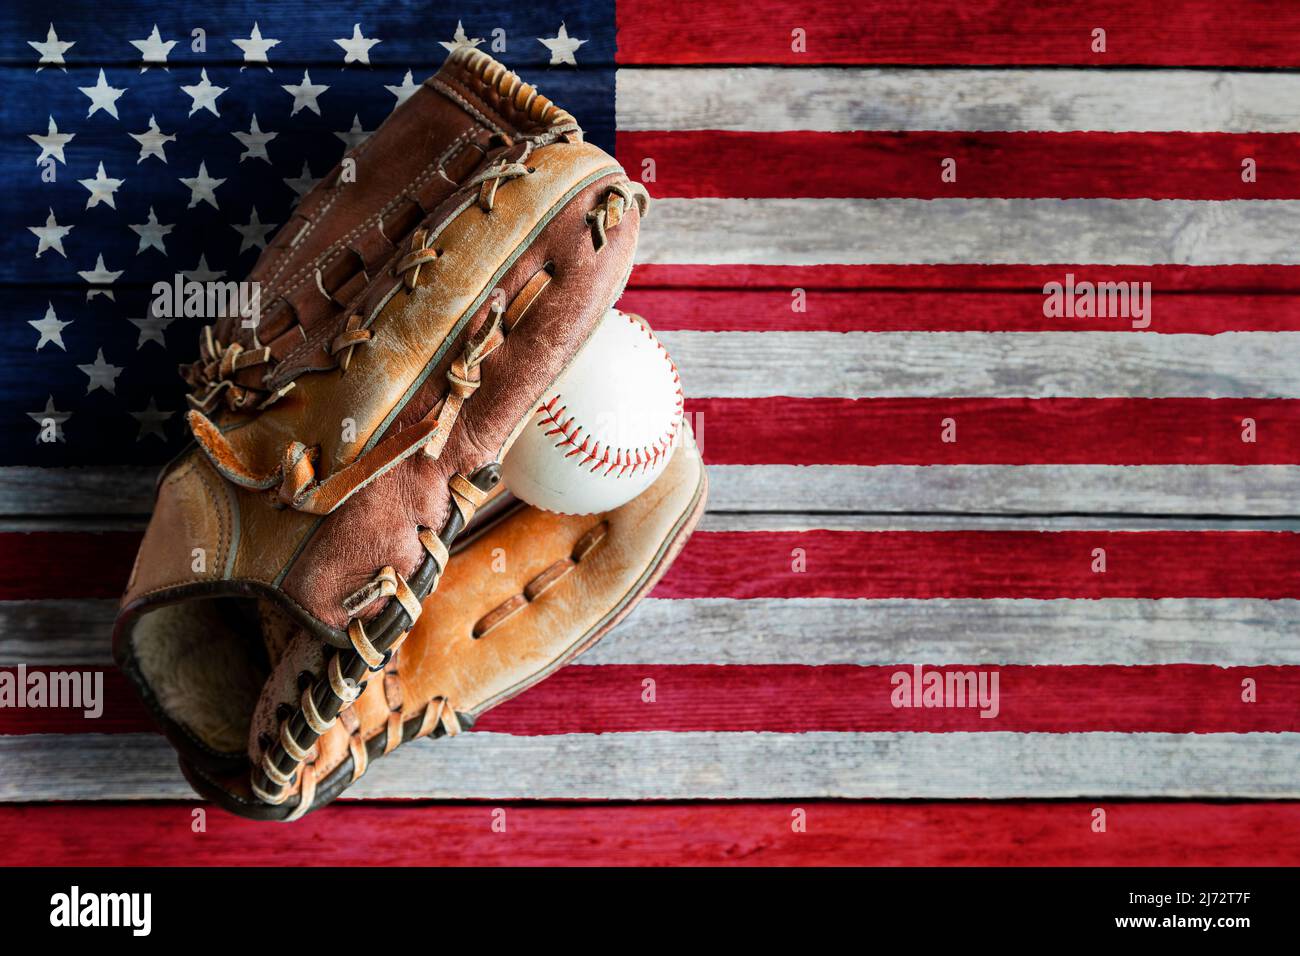 Guante de cuero de béisbol o sóftbol con pelota sobre fondo rústico de madera con bandera estadounidense pintada y espacio de copia. Foto de stock